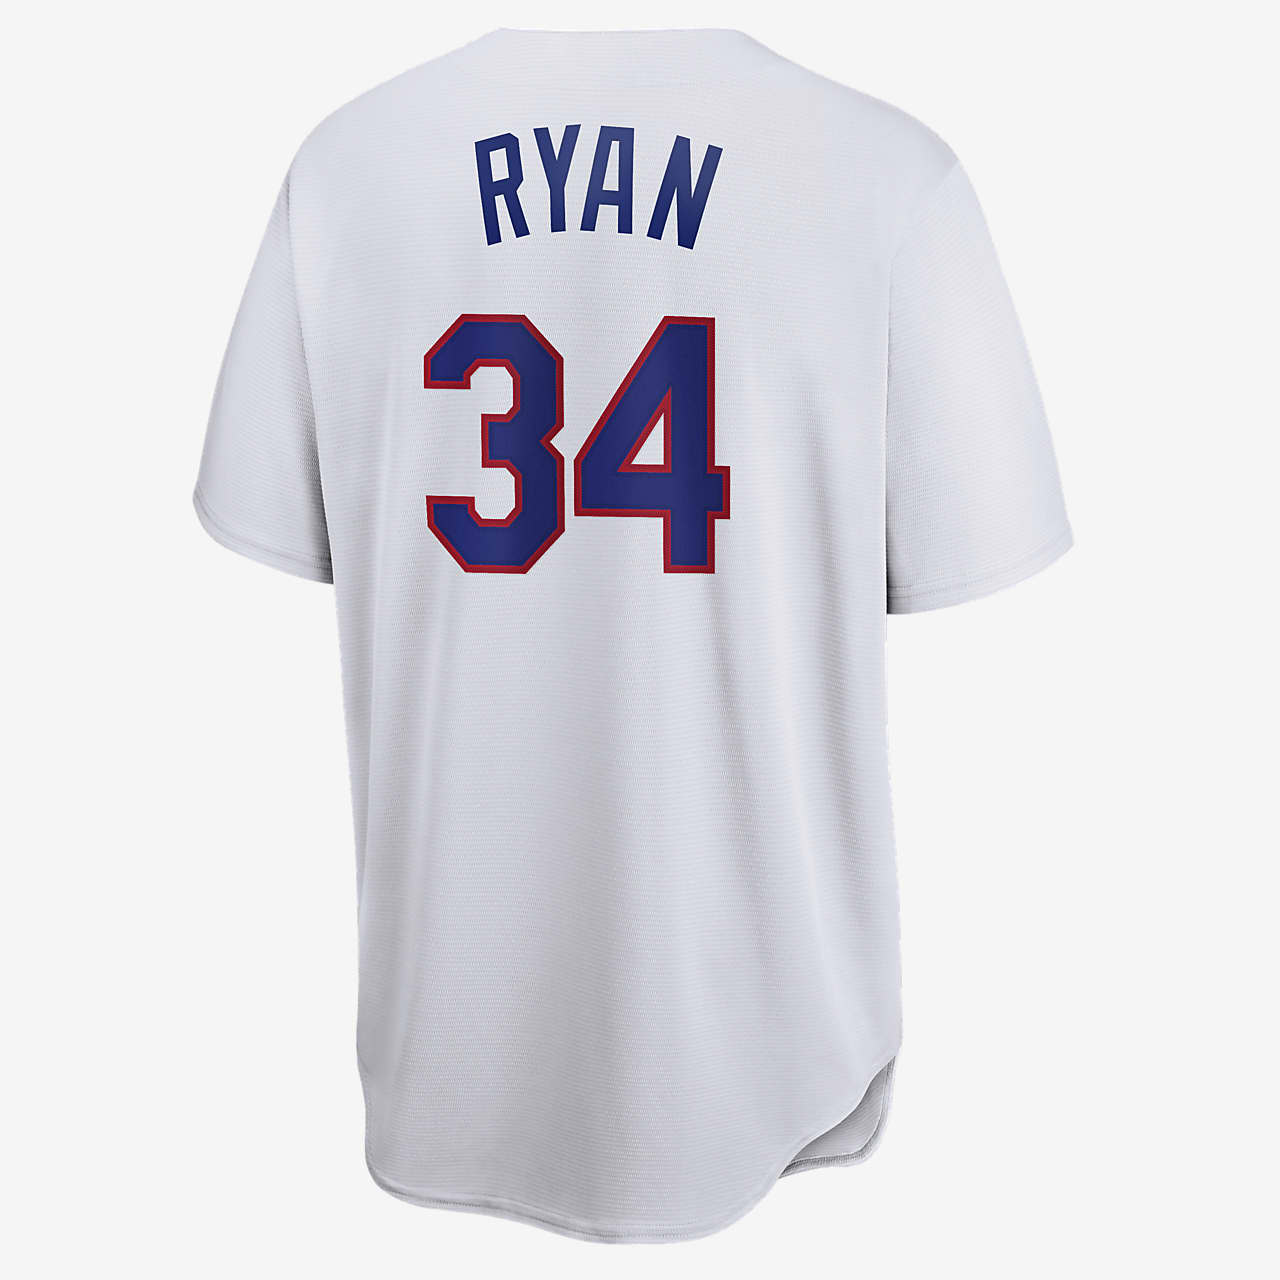 افضل بخاخات الانف MLB Texas Rangers (Nolan Ryan) Men's Cooperstown Baseball Jersey افضل بخاخات الانف